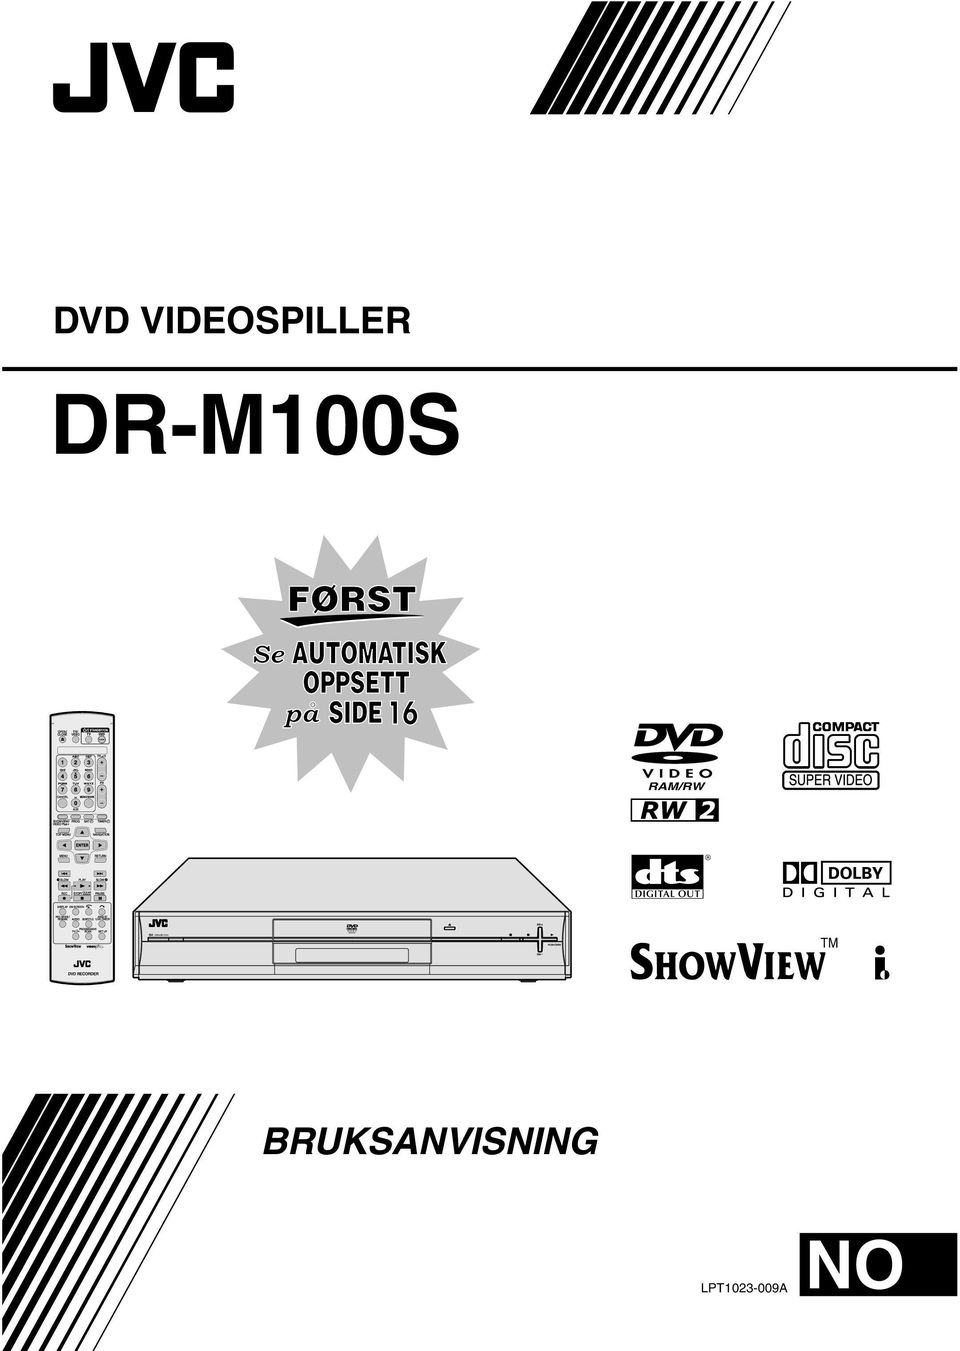 VIDEOSPILLER DR-M100S 16